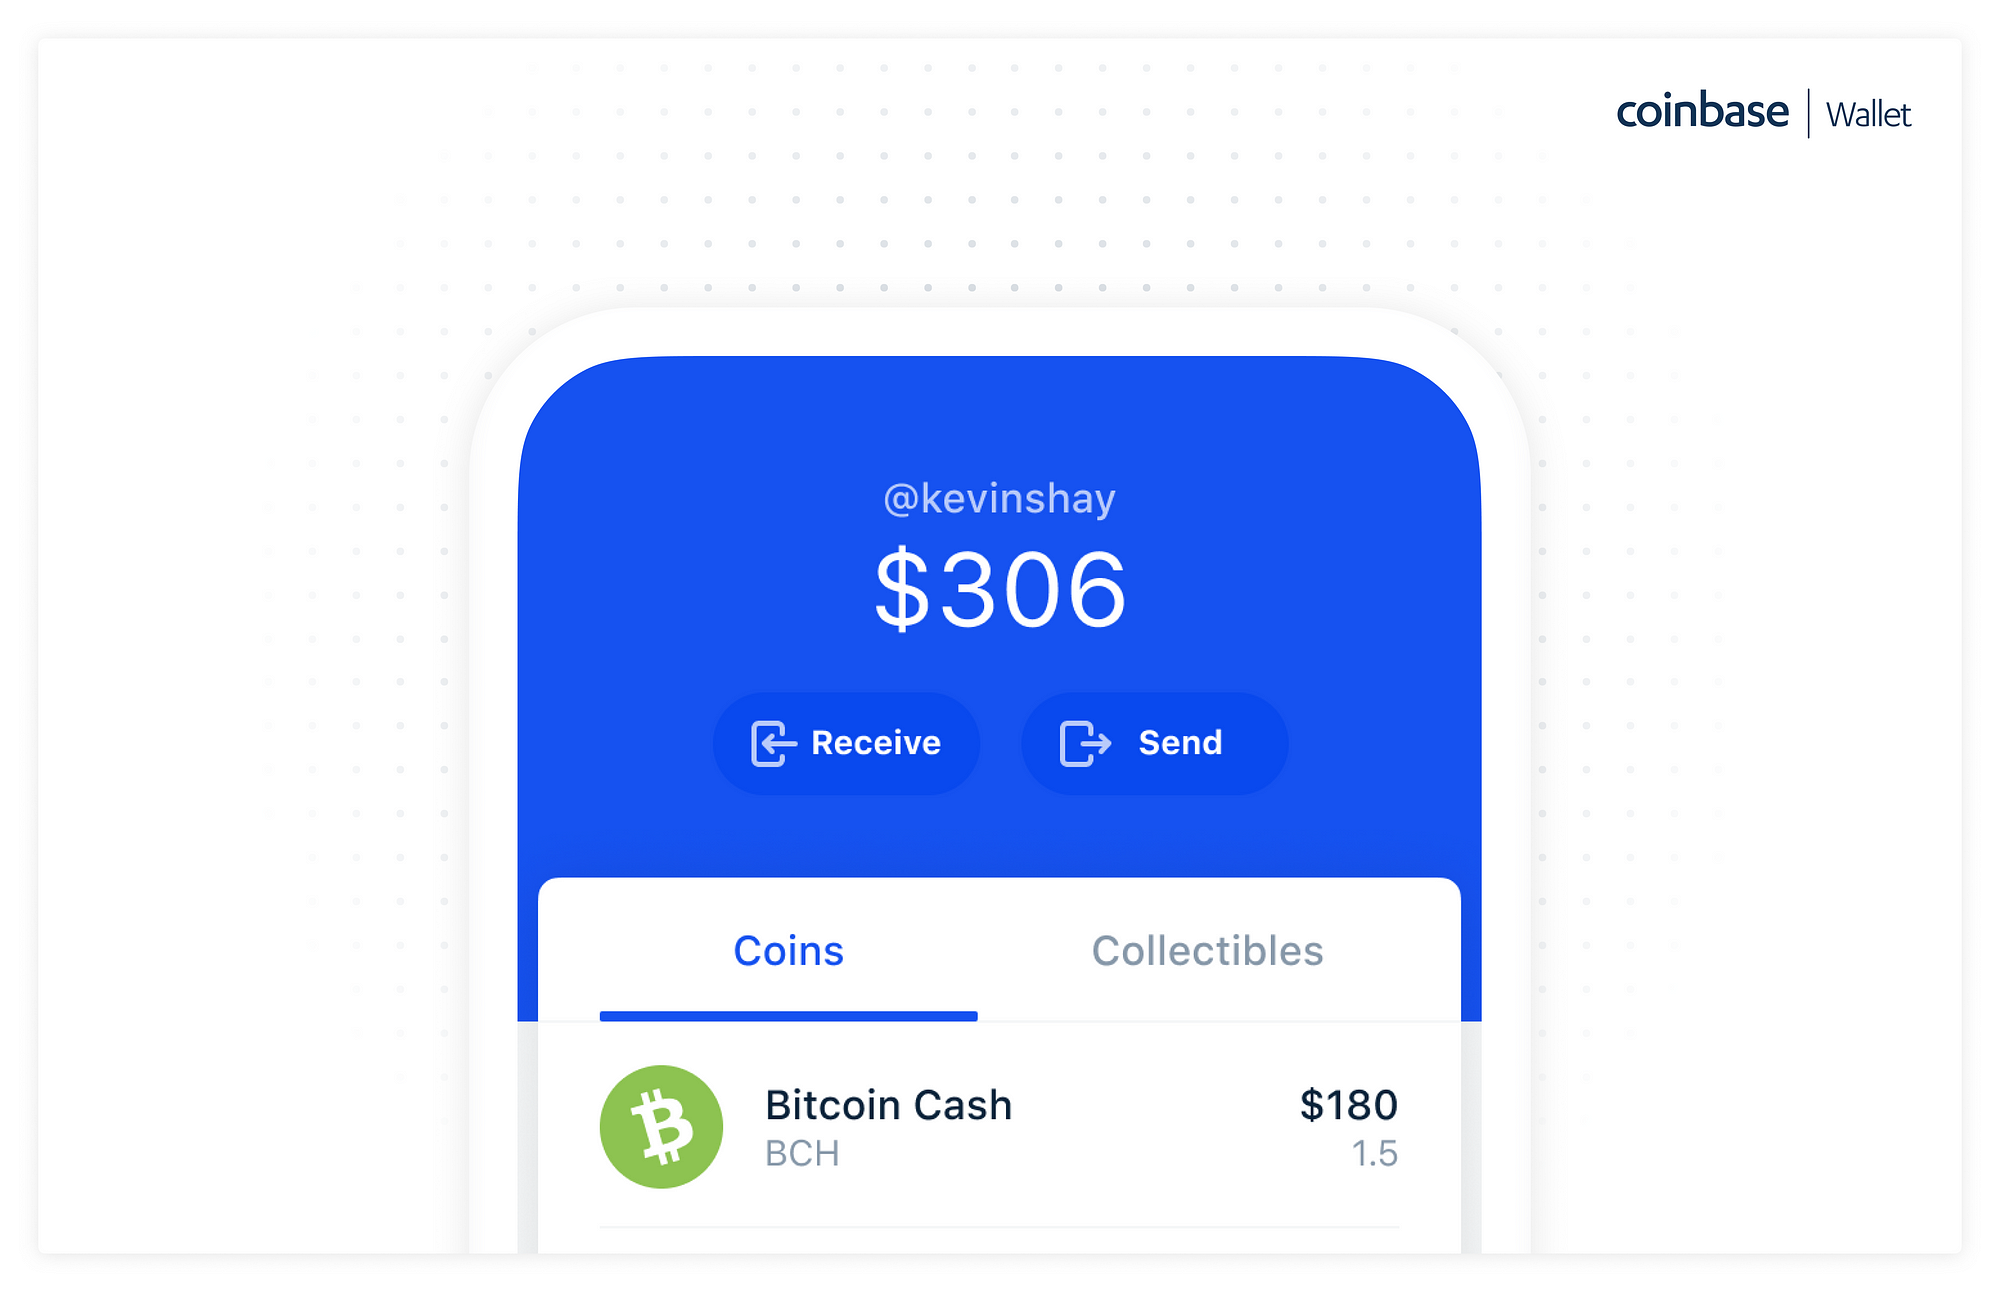 coinbase taking on bitcoin cash